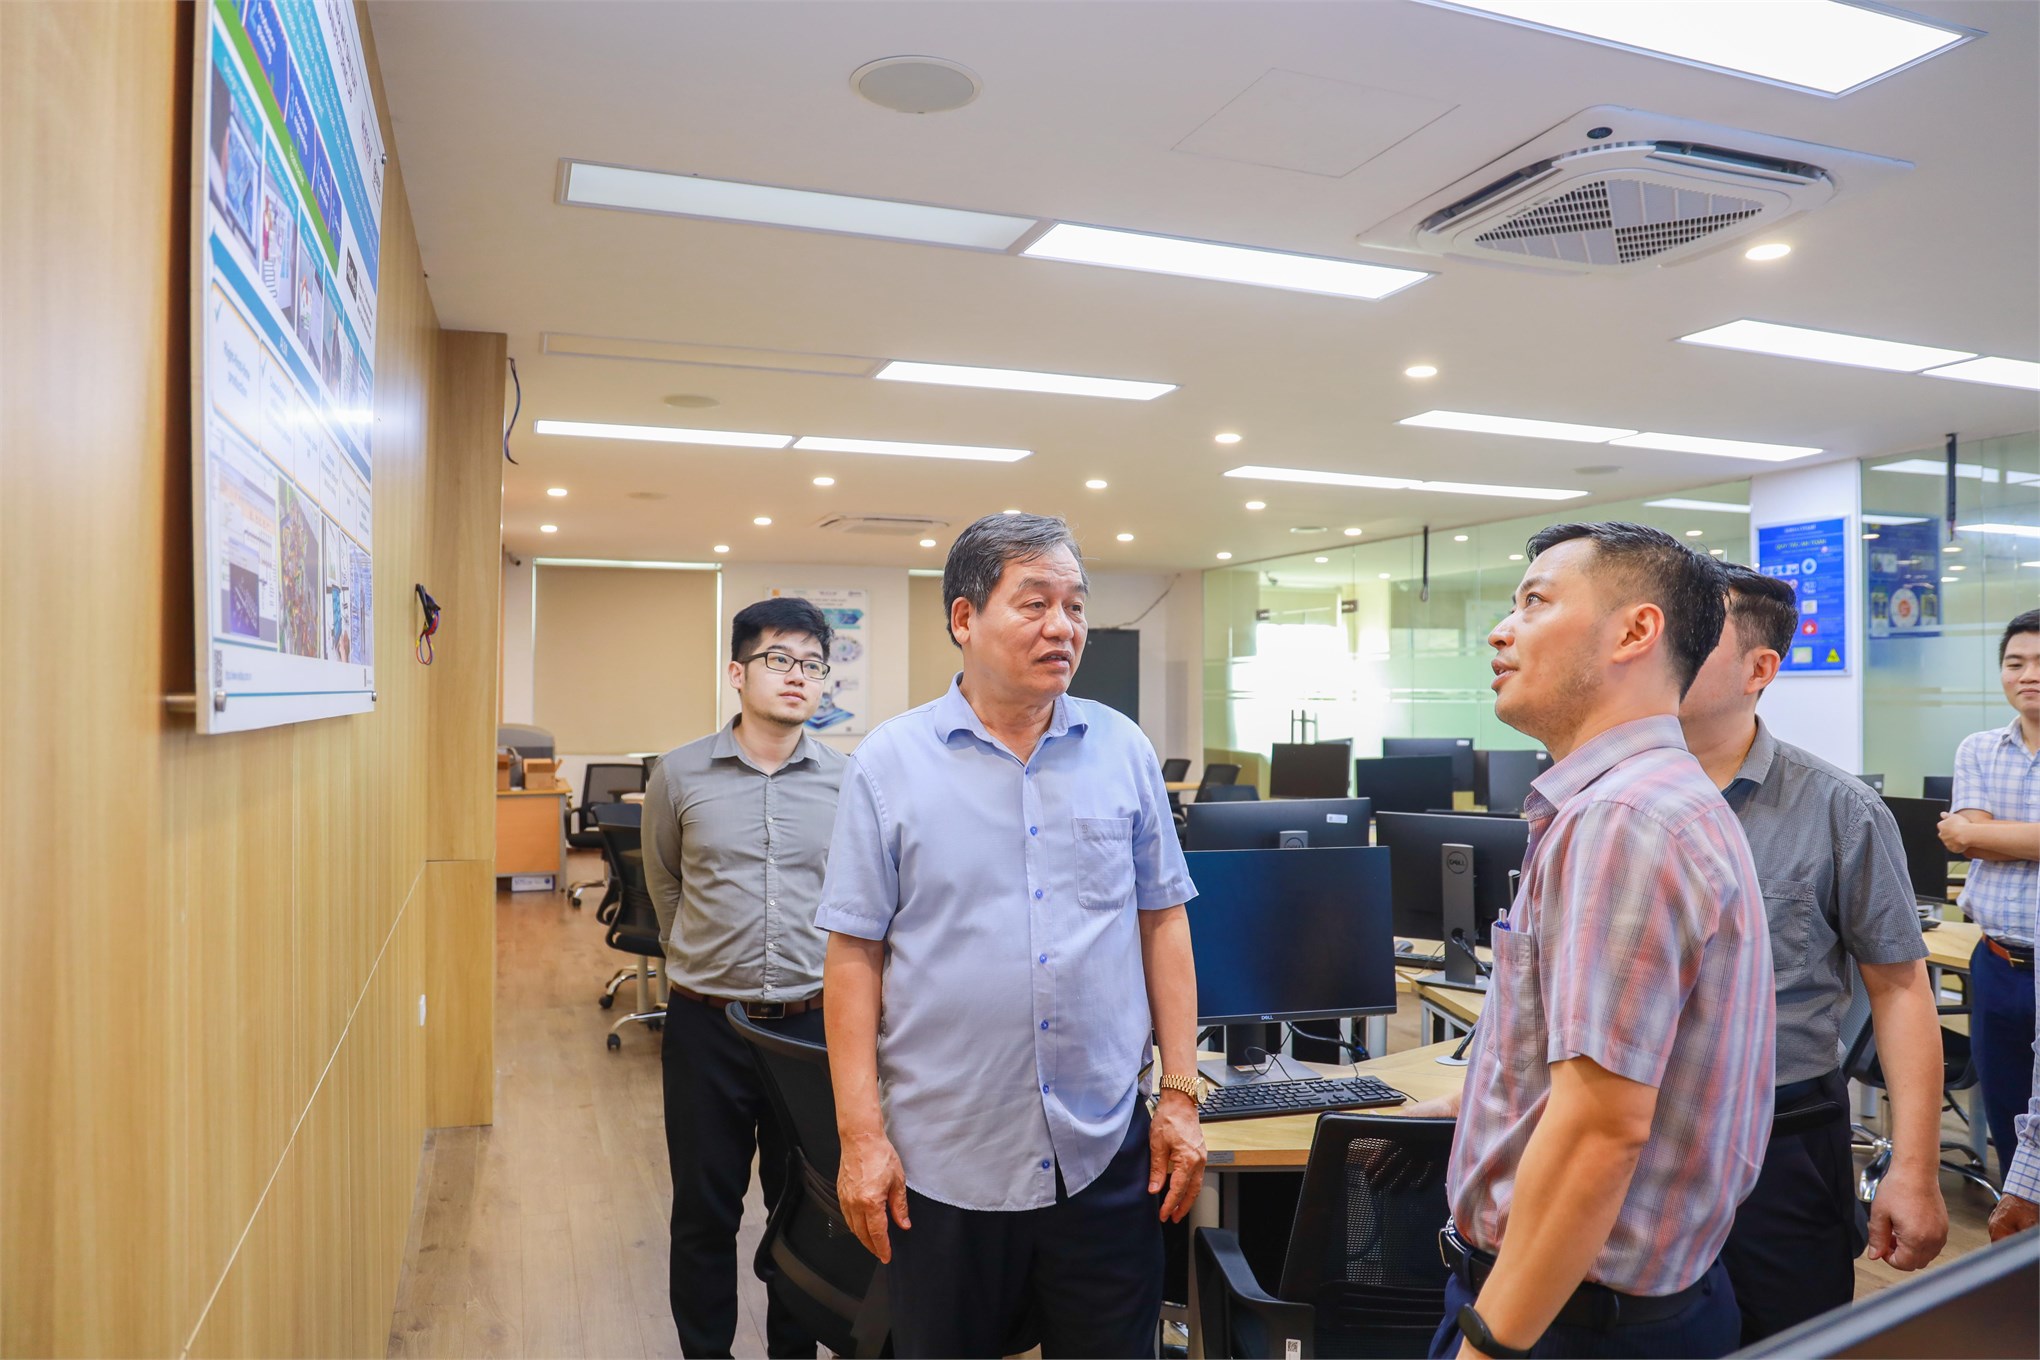 Đại học Công nghiệp Hà Nội hợp tác, phát triển khoa học công nghệ trên địa bản Thủ đô Hà Nội